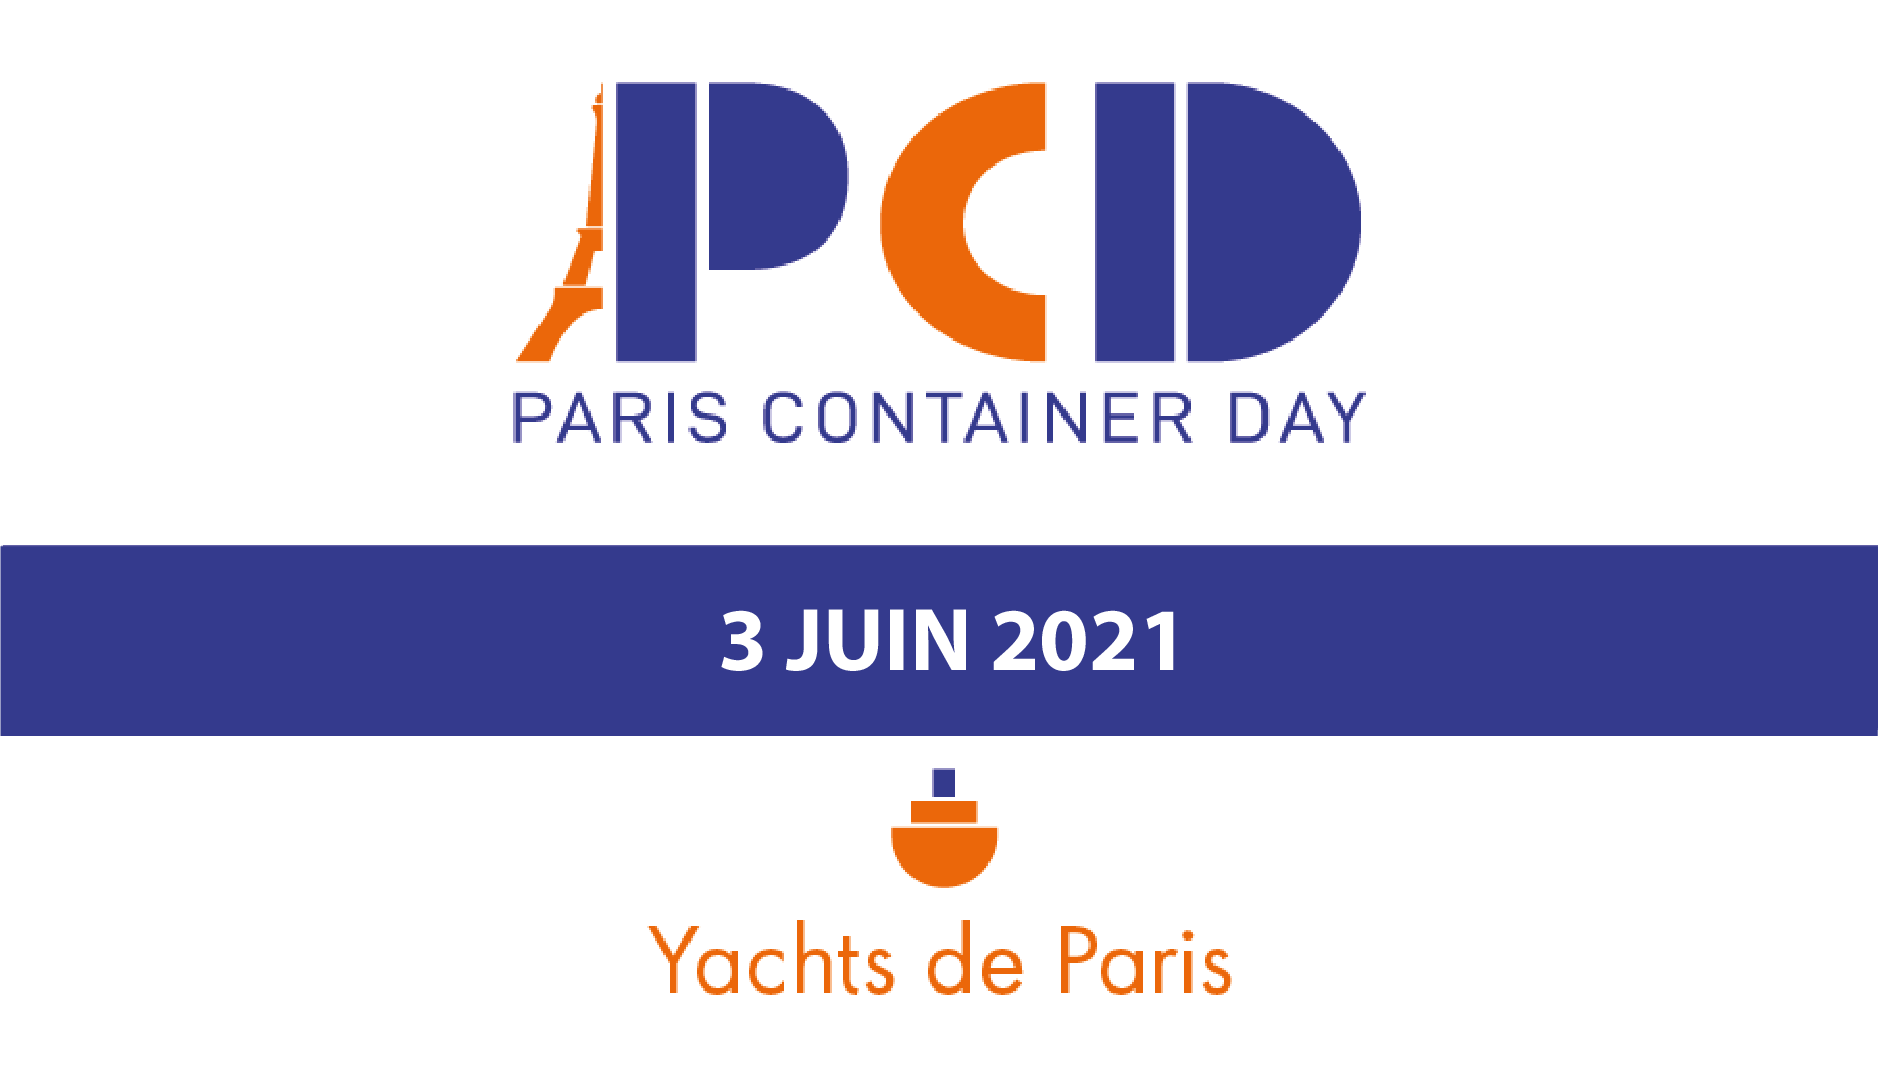 Paris Container Day